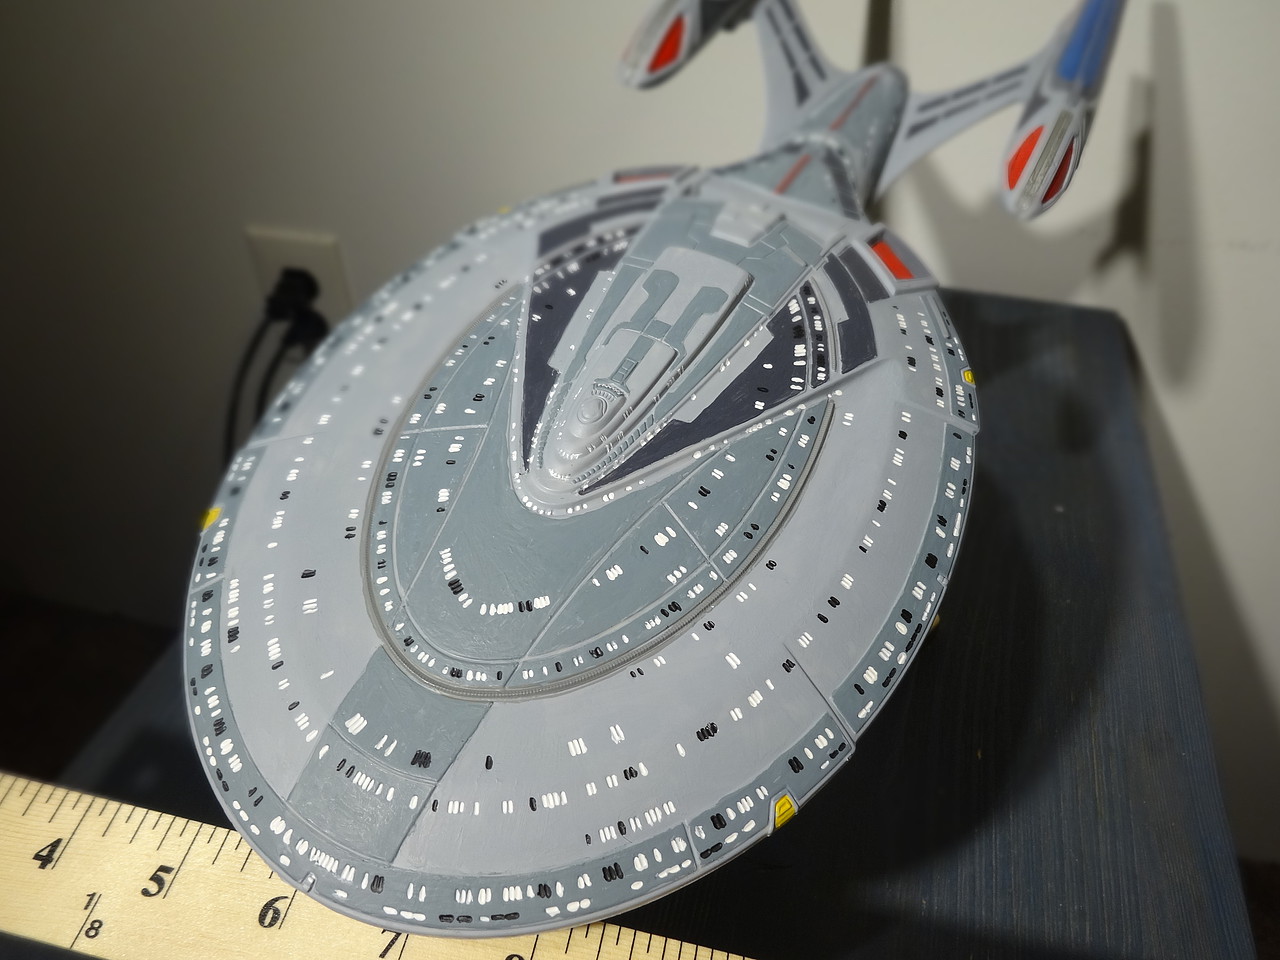 Star Trek Uss Enterprise 1701e Science Fiction Plastic Model Kit